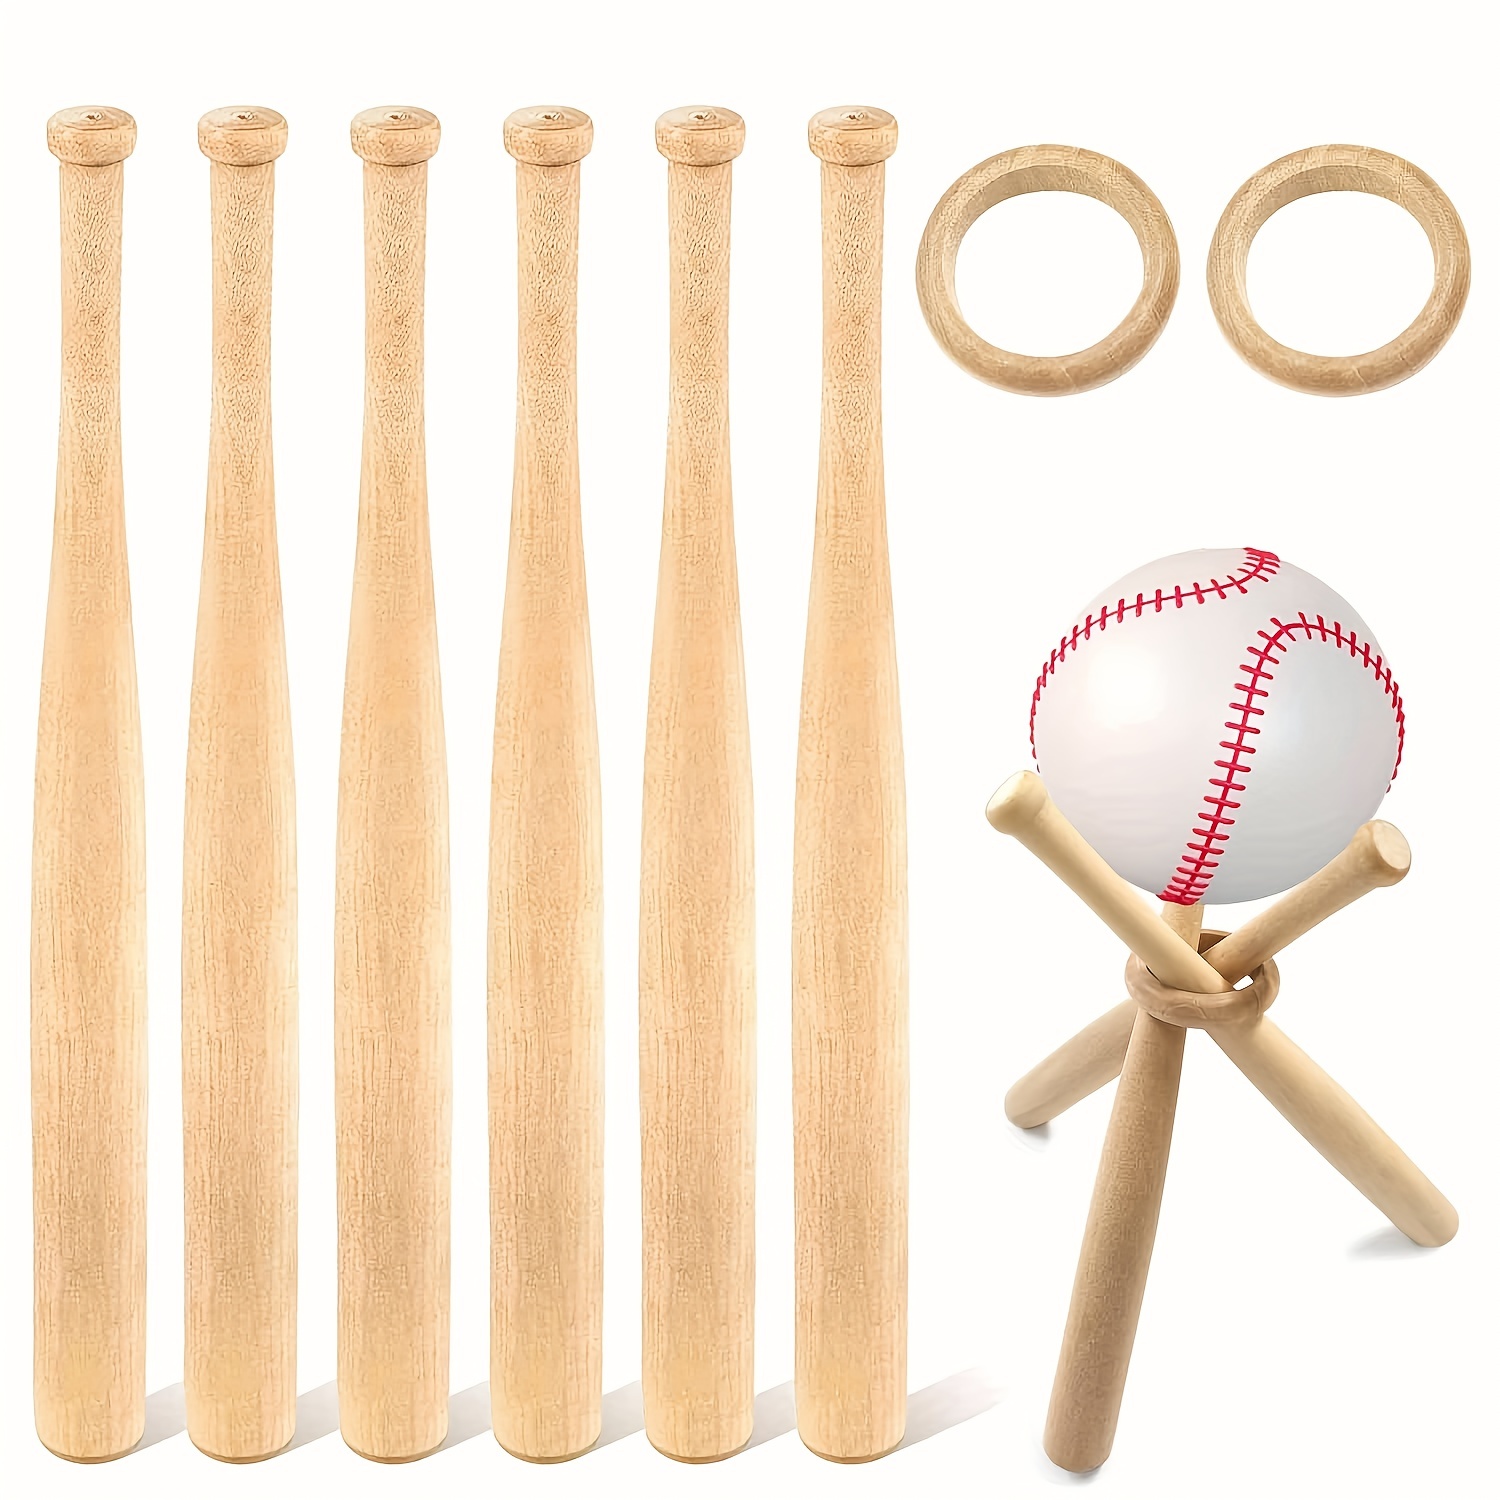  Bate de béisbol utilizado para béisbol y autodefensa